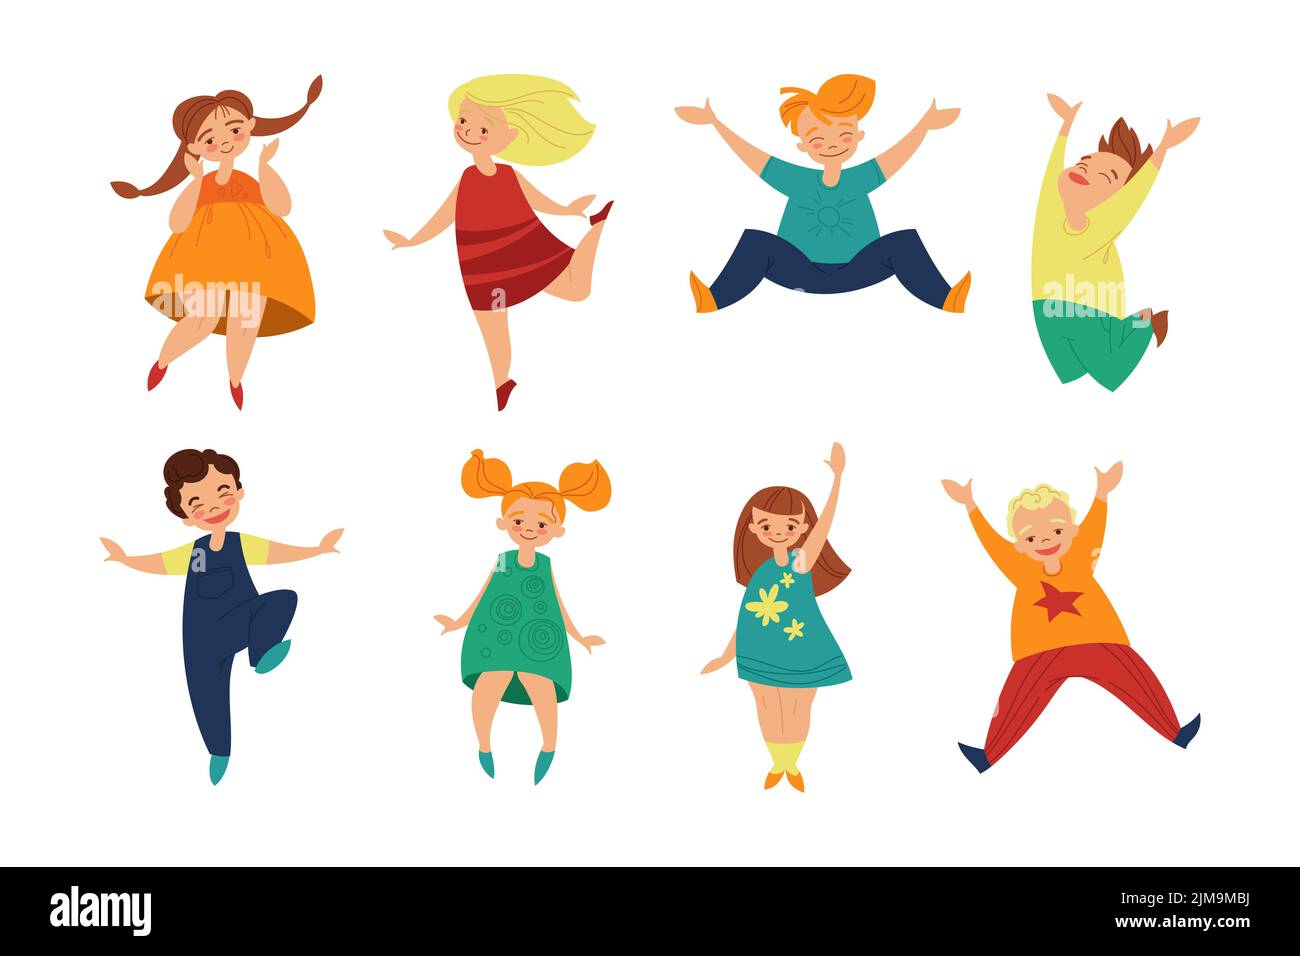 Happy niedlichen Kinder Cartoon Illustration Set. Gruppe von kleinen Kindern, fröhlichen Charakteren, Schuljungen und Mädchen, die in verschiedenen Positionen auf whit stehen Stock Vektor